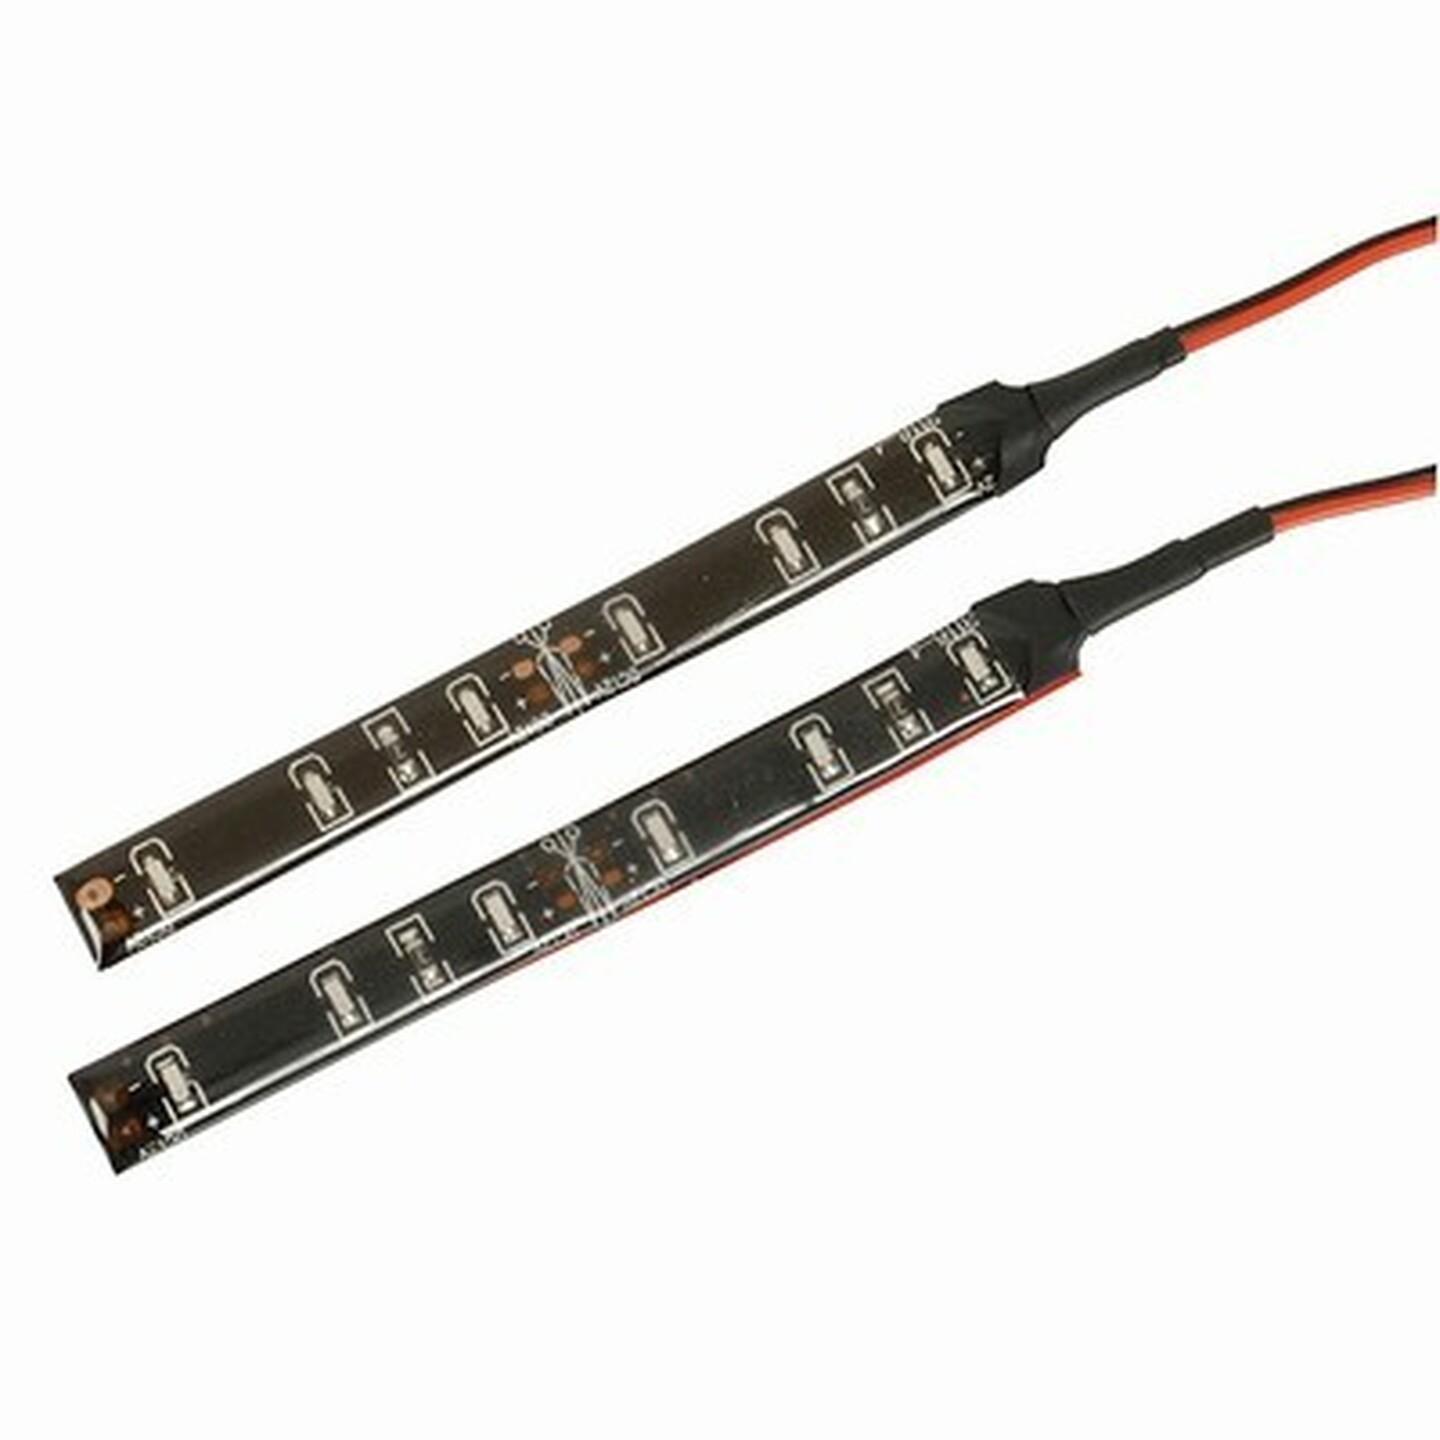 2 x 6 LED Light 12VDC Strip Kits